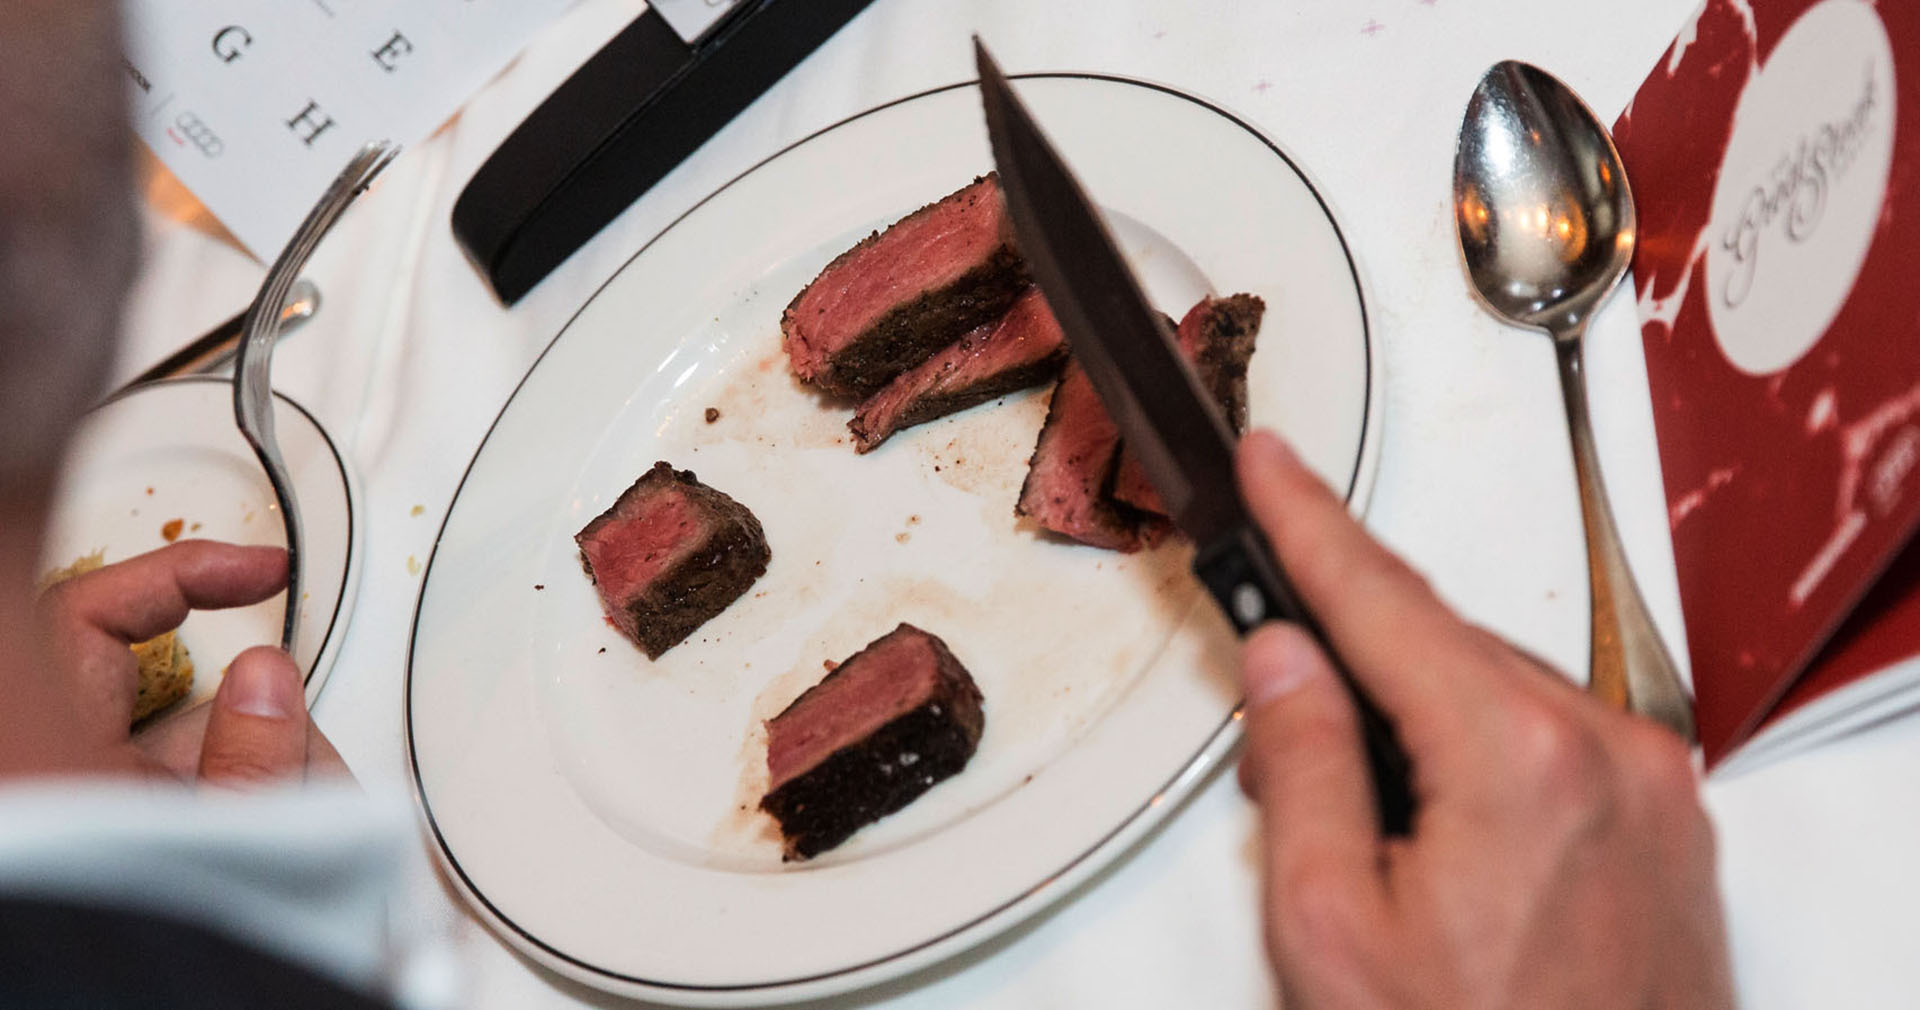 The Great Steak Debate